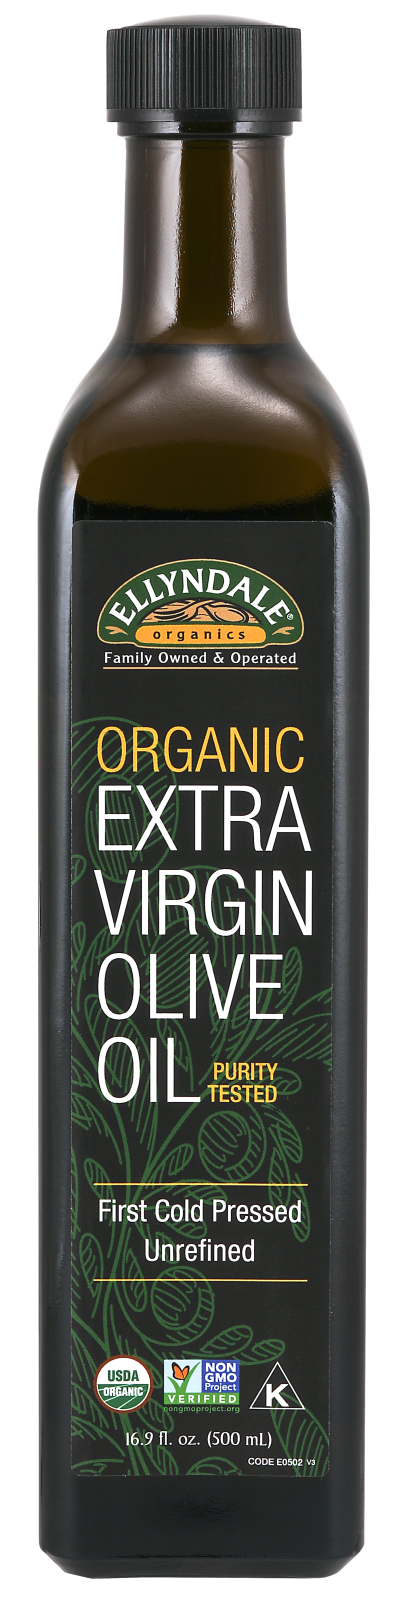 Extra Virgin Olive Oil 16.9 oz. Glass Bottle Front